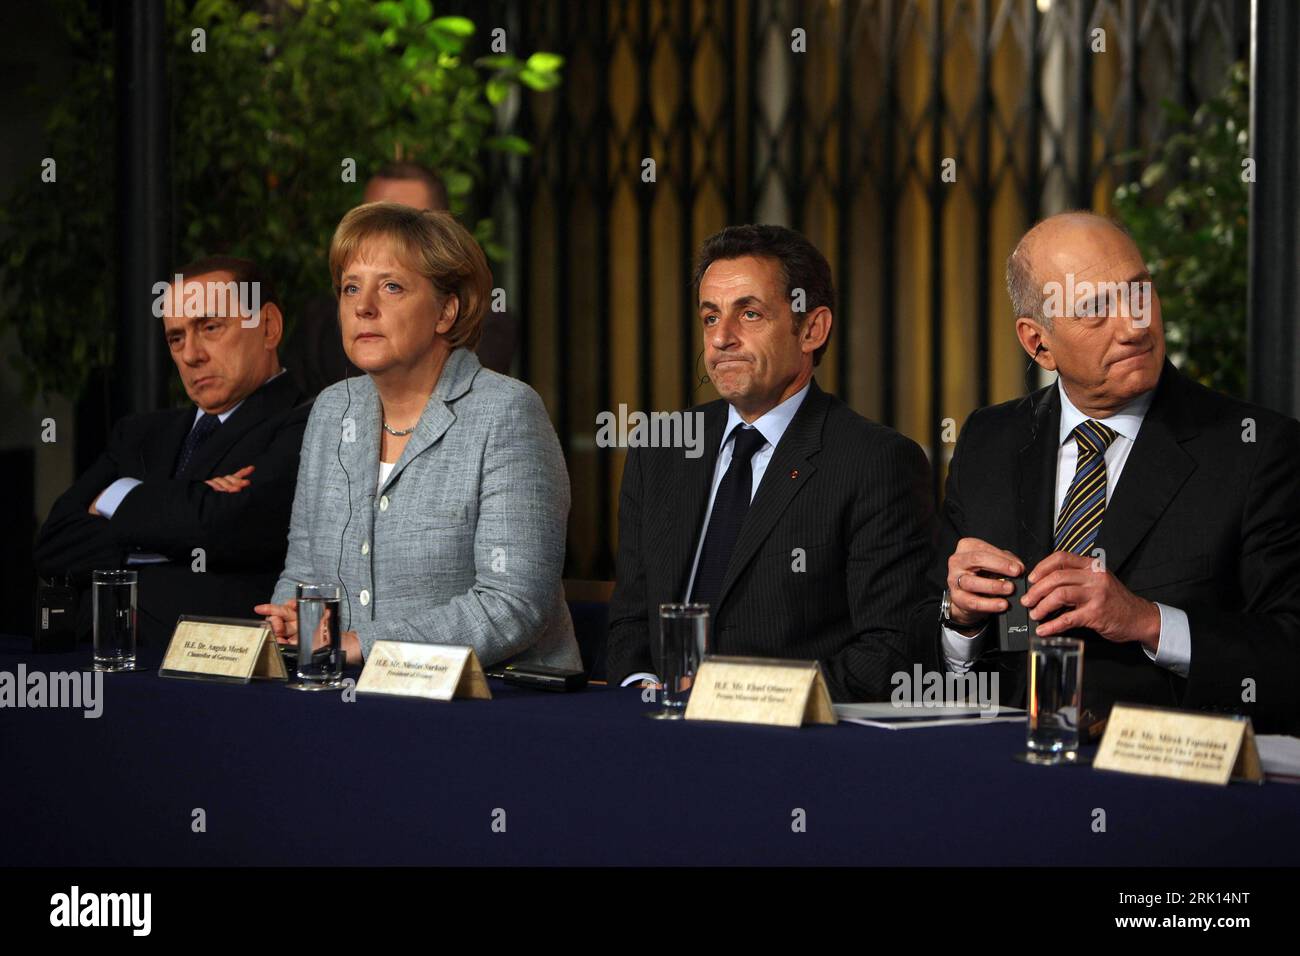 Bildnummer: 52853044  Datum: 18.01.2009  Copyright: imago/Xinhua Premierminister Ehud Olmert (re., Israel) mit (v.l.n.r.) Premierminister Silvio Berlusconi (Italien), Bundeskanzlerin Angela Merkel (Deutschland/CDU) und Präsident Nicolas Sarkozy (Frankreich) während einer gemeinsamen Pressekonferenz zum Nahostkonflikt in Jerusalem - PUBLICATIONxNOTxINxCHN, Personen , pessimistisch; premiumd, 2009, Jerusalem, Nahostkonflikt, Krieg, Politik, Pressekonferenz , Pressetermin; , quer, Kbdig, Gruppenbild, Randbild, People    Bildnummer 52853044 Date 18 01 2009 Copyright Imago XINHUA Prime Minister Ehu Stock Photo